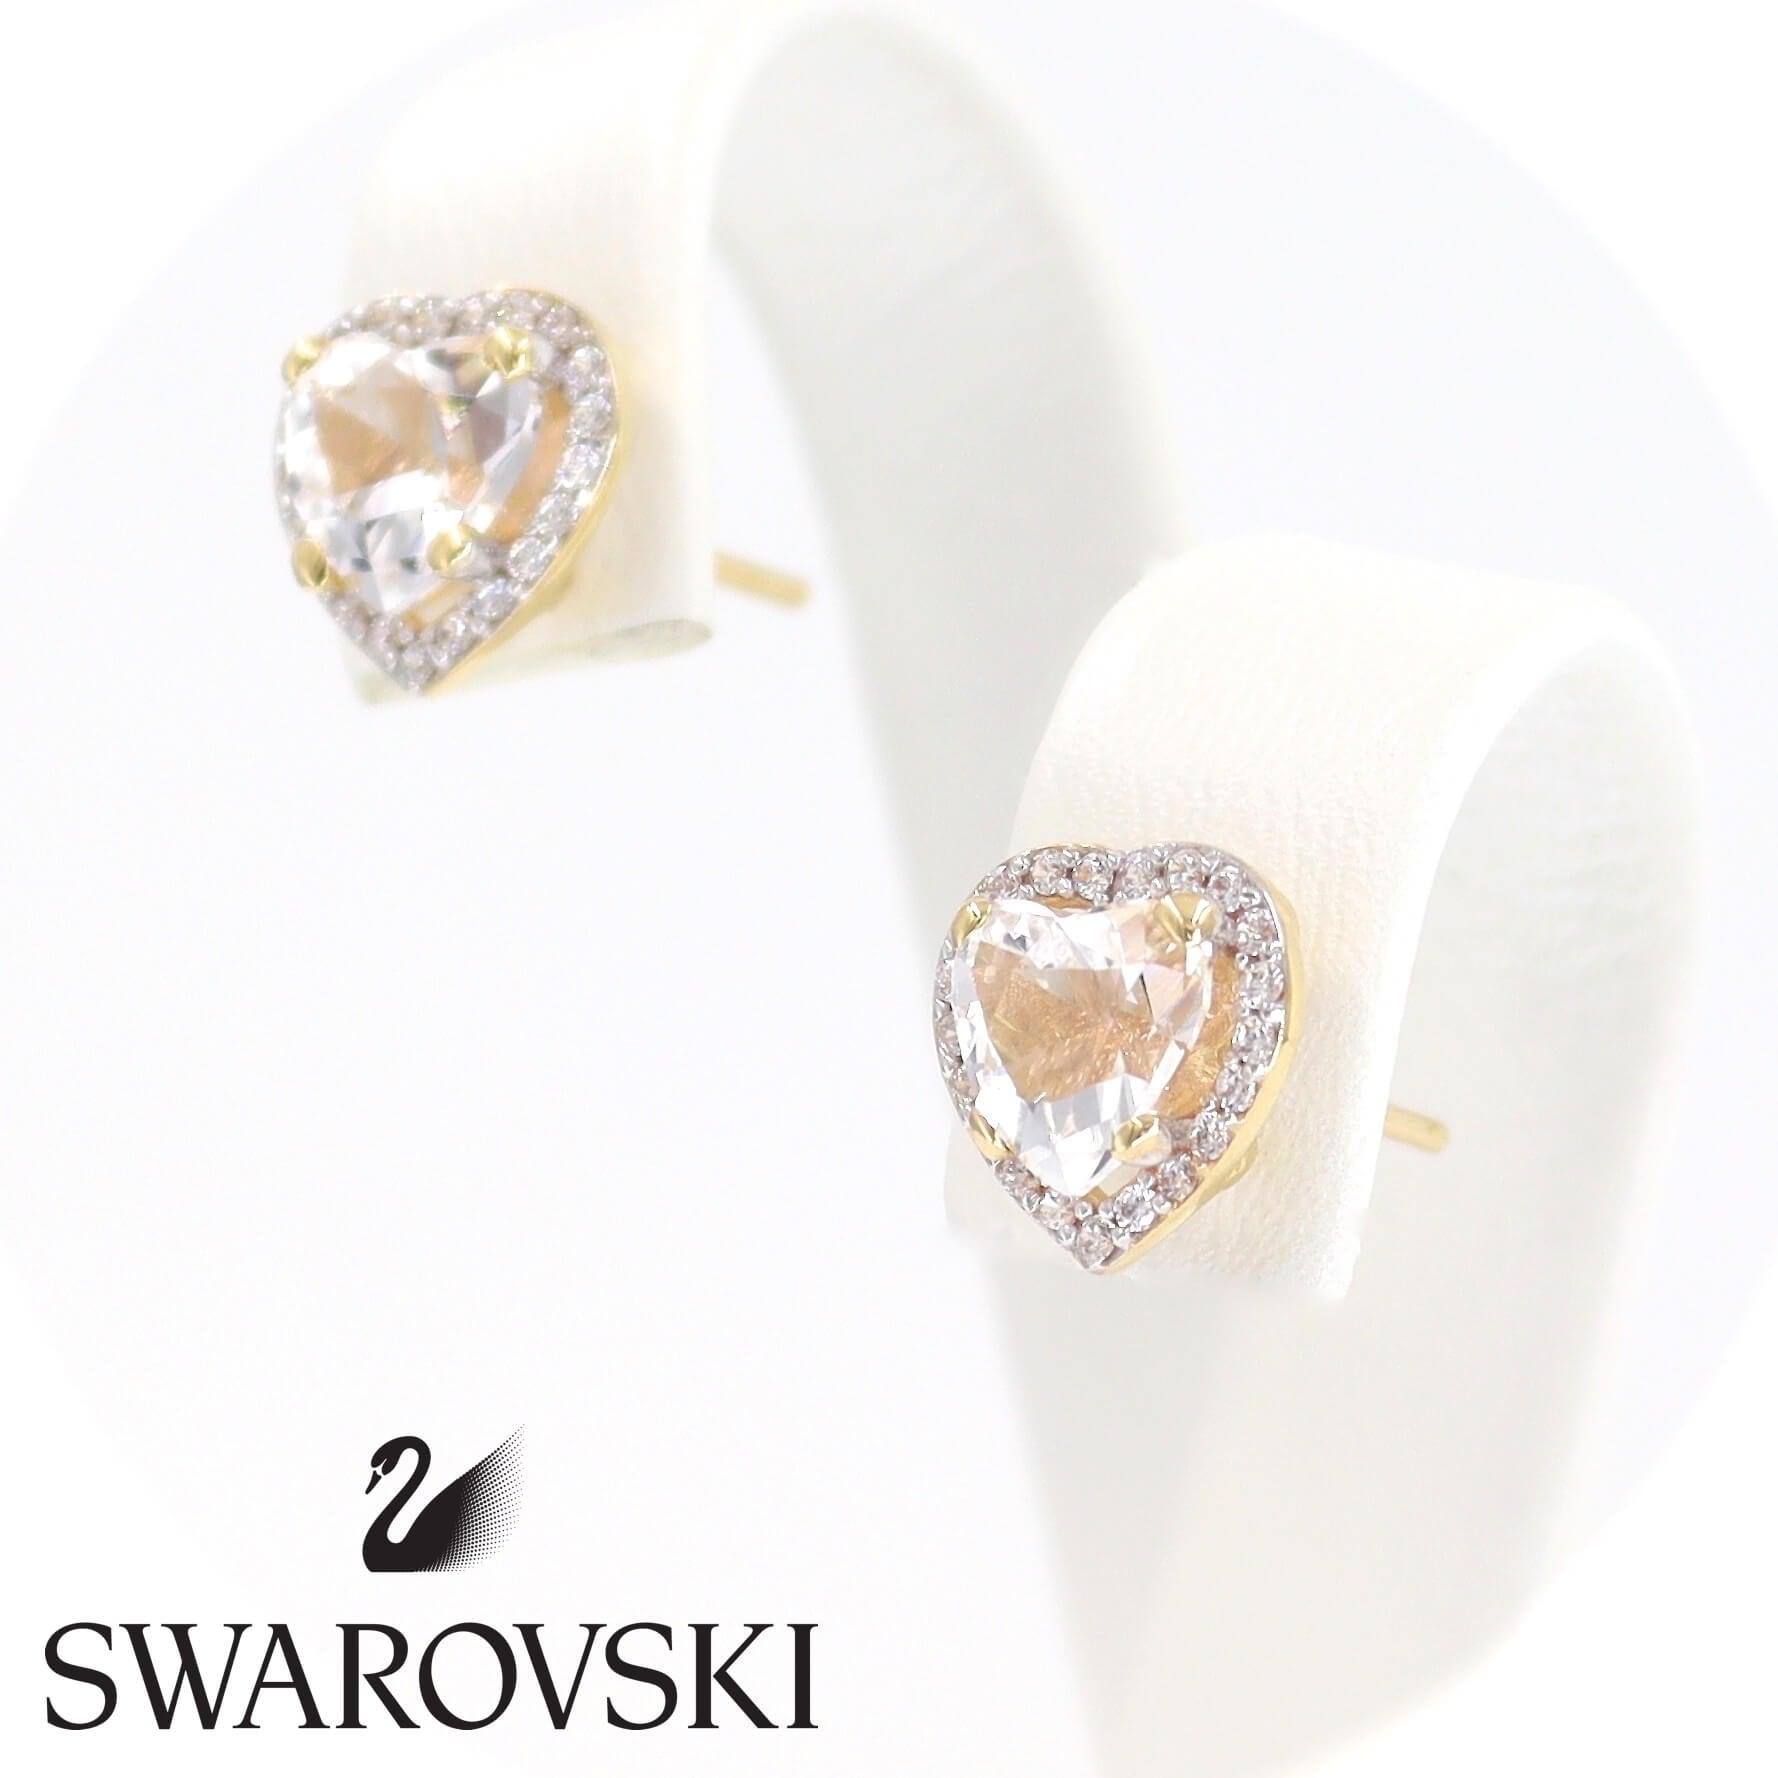 Χρυσά σκουλαρίκια 14 καρατίων με ορυκτές πέτρες Swarovski σε σχήμα καρδιάς